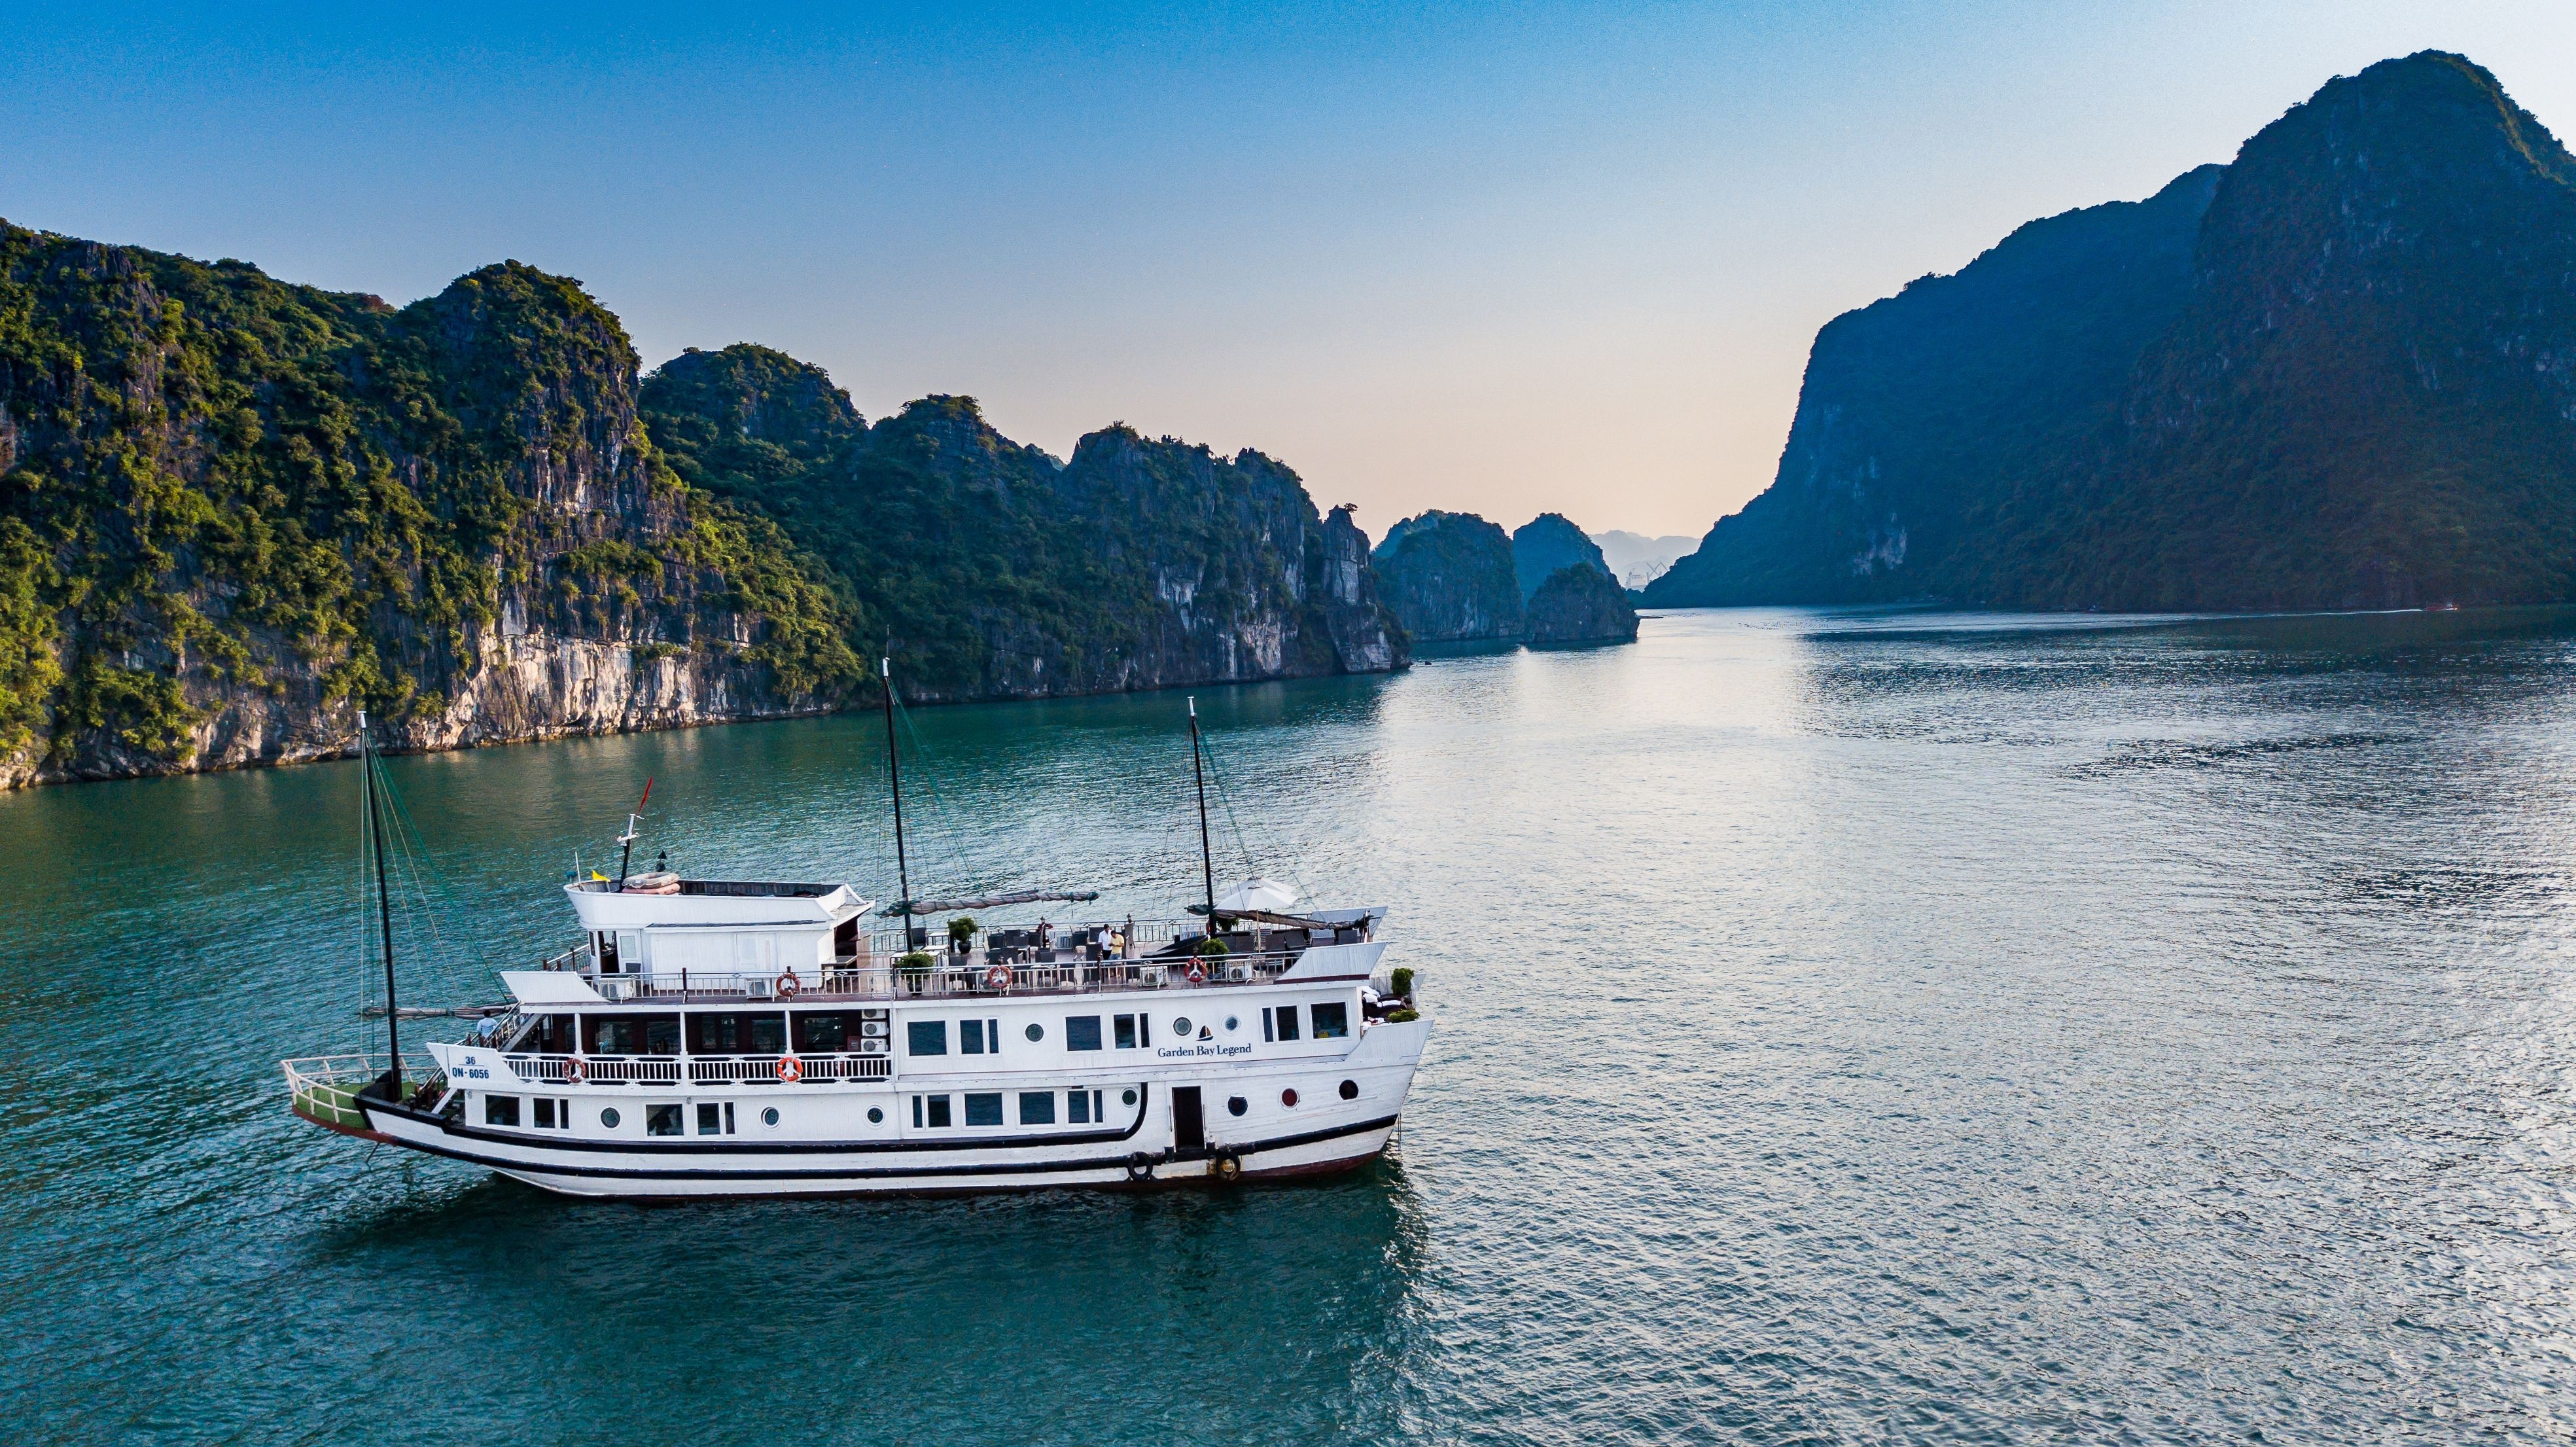 tourhub | LVP Travel Vietnam | 8 DAYS EXPLORER PACKAGE TOUR IN VIETNAM | 8 DAYS EXPLORER